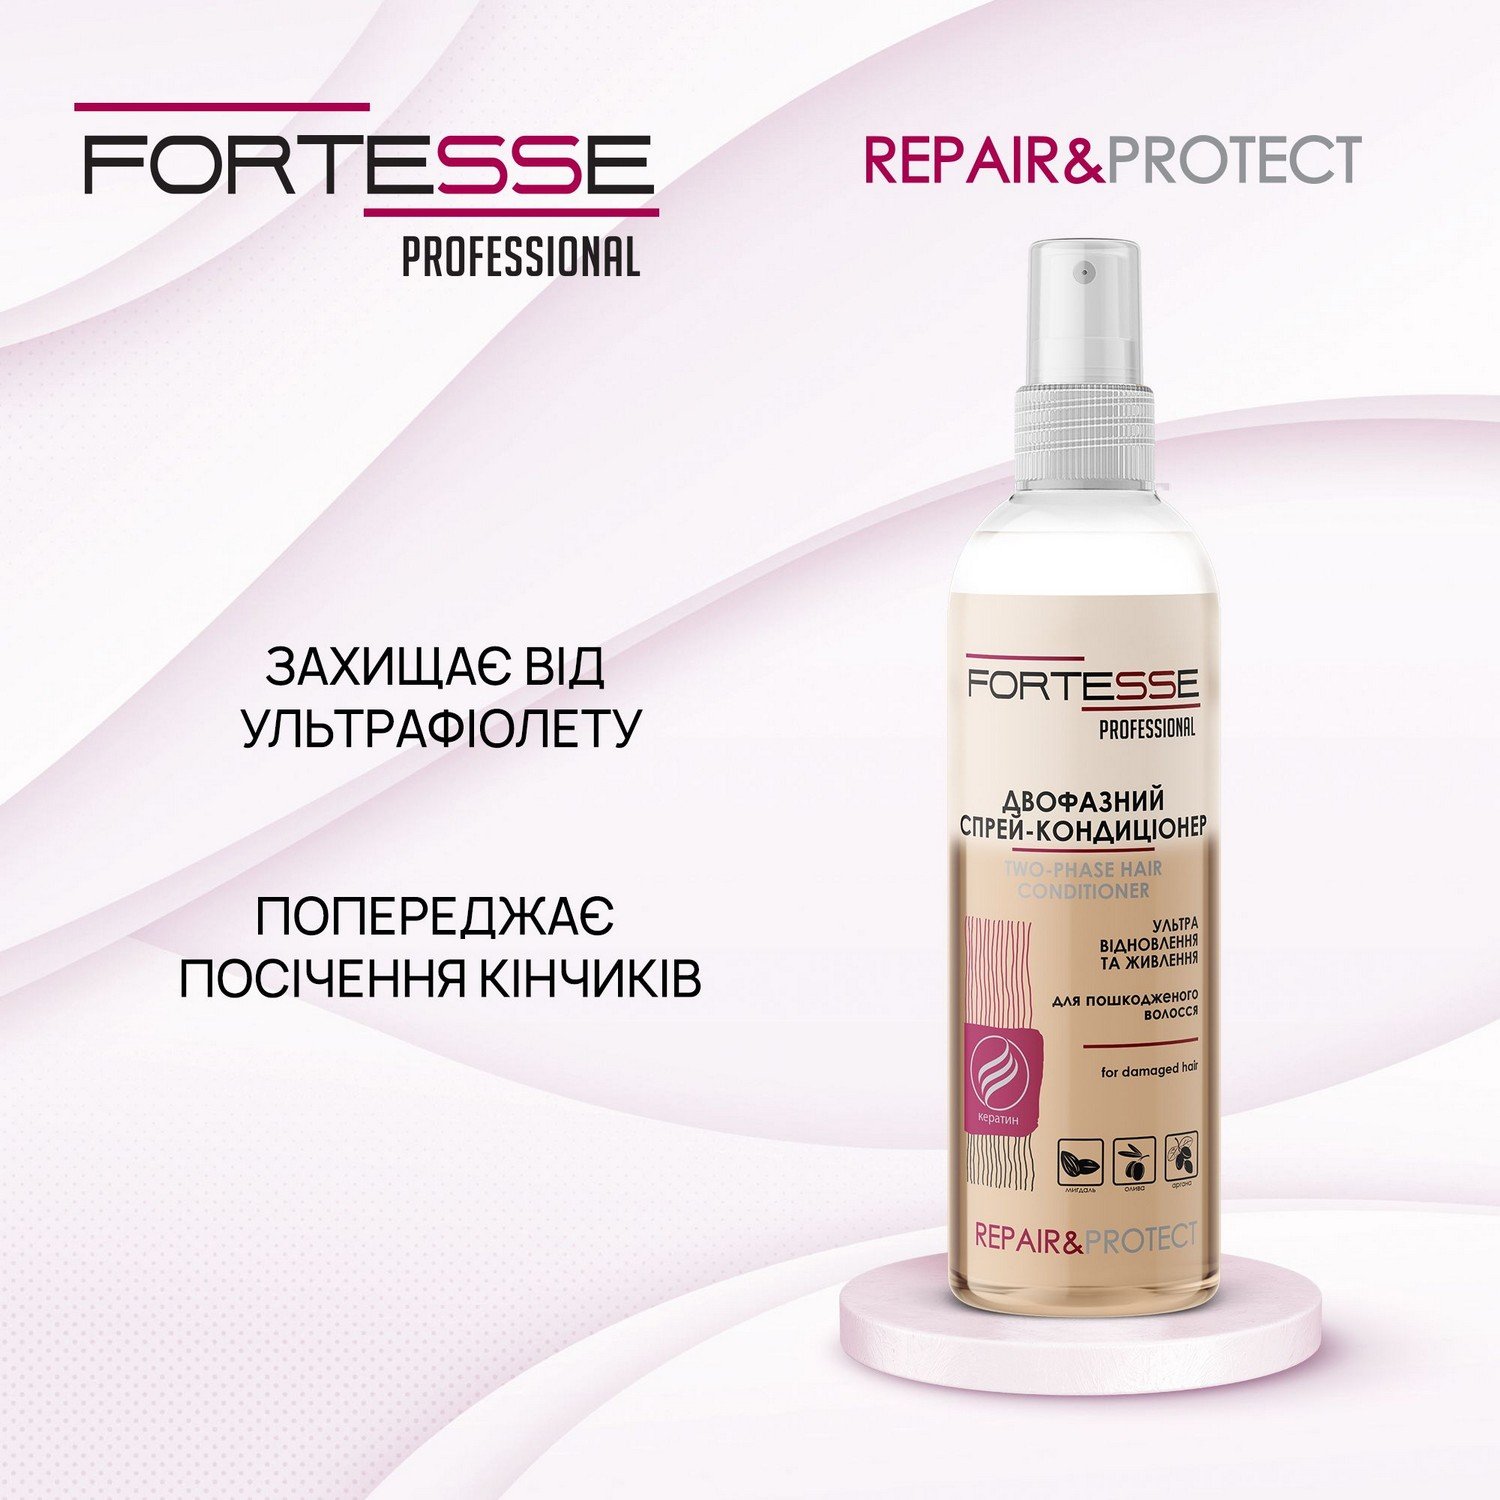 Двофазний спрей-кондиціонер Fortesse Professional Repair&Protect Ультравідновлення та живлення, для пошкодженого волосся, 250 мл - фото 5